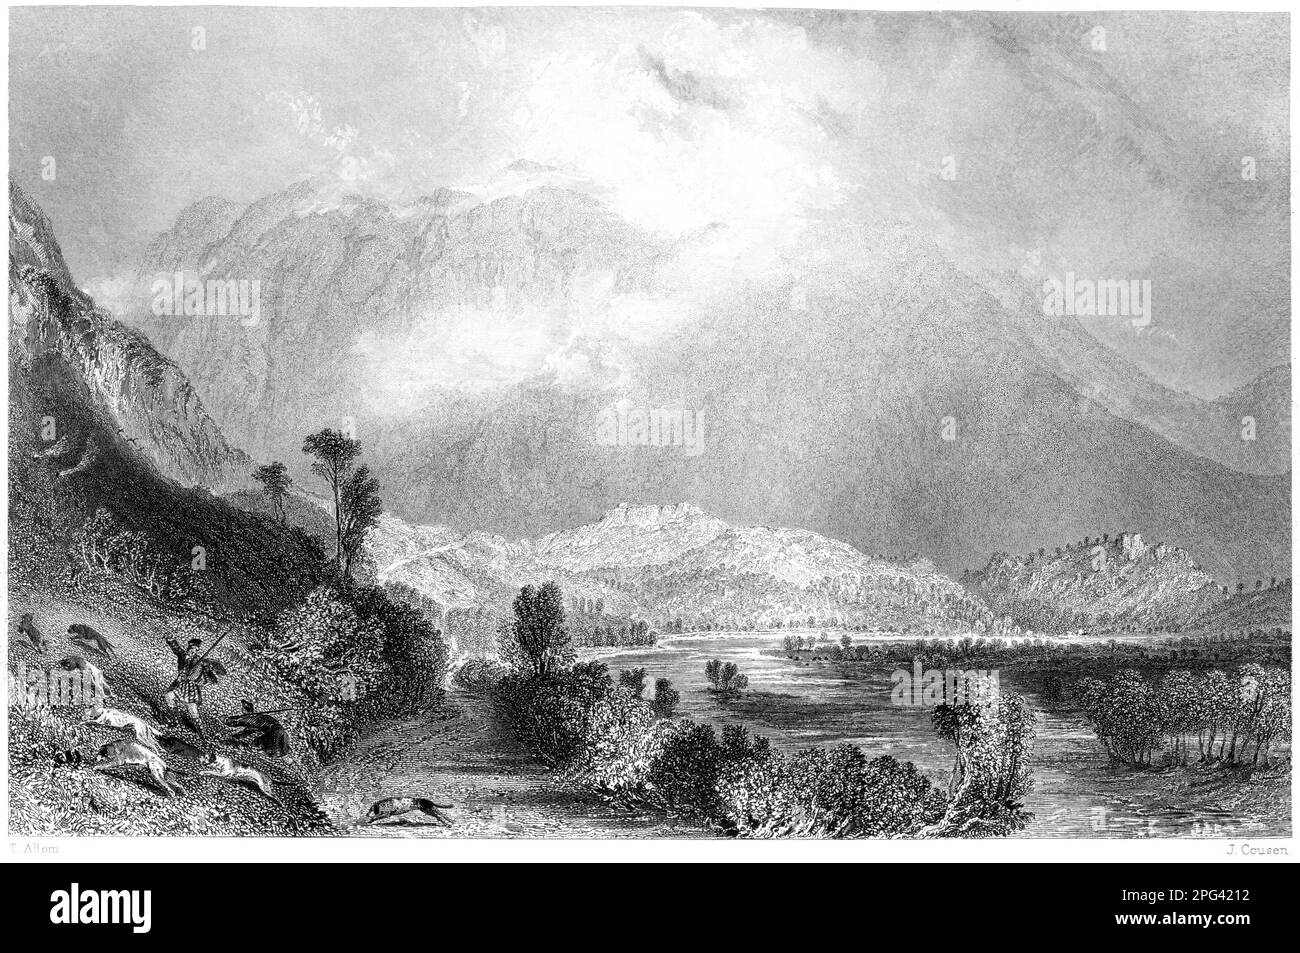 Eine Gravur von Glencoe aus dem Westen, West Highlands, Schottland, Großbritannien, gescannt mit hoher Auflösung aus einem 1840 gedruckten Buch. Stockfoto